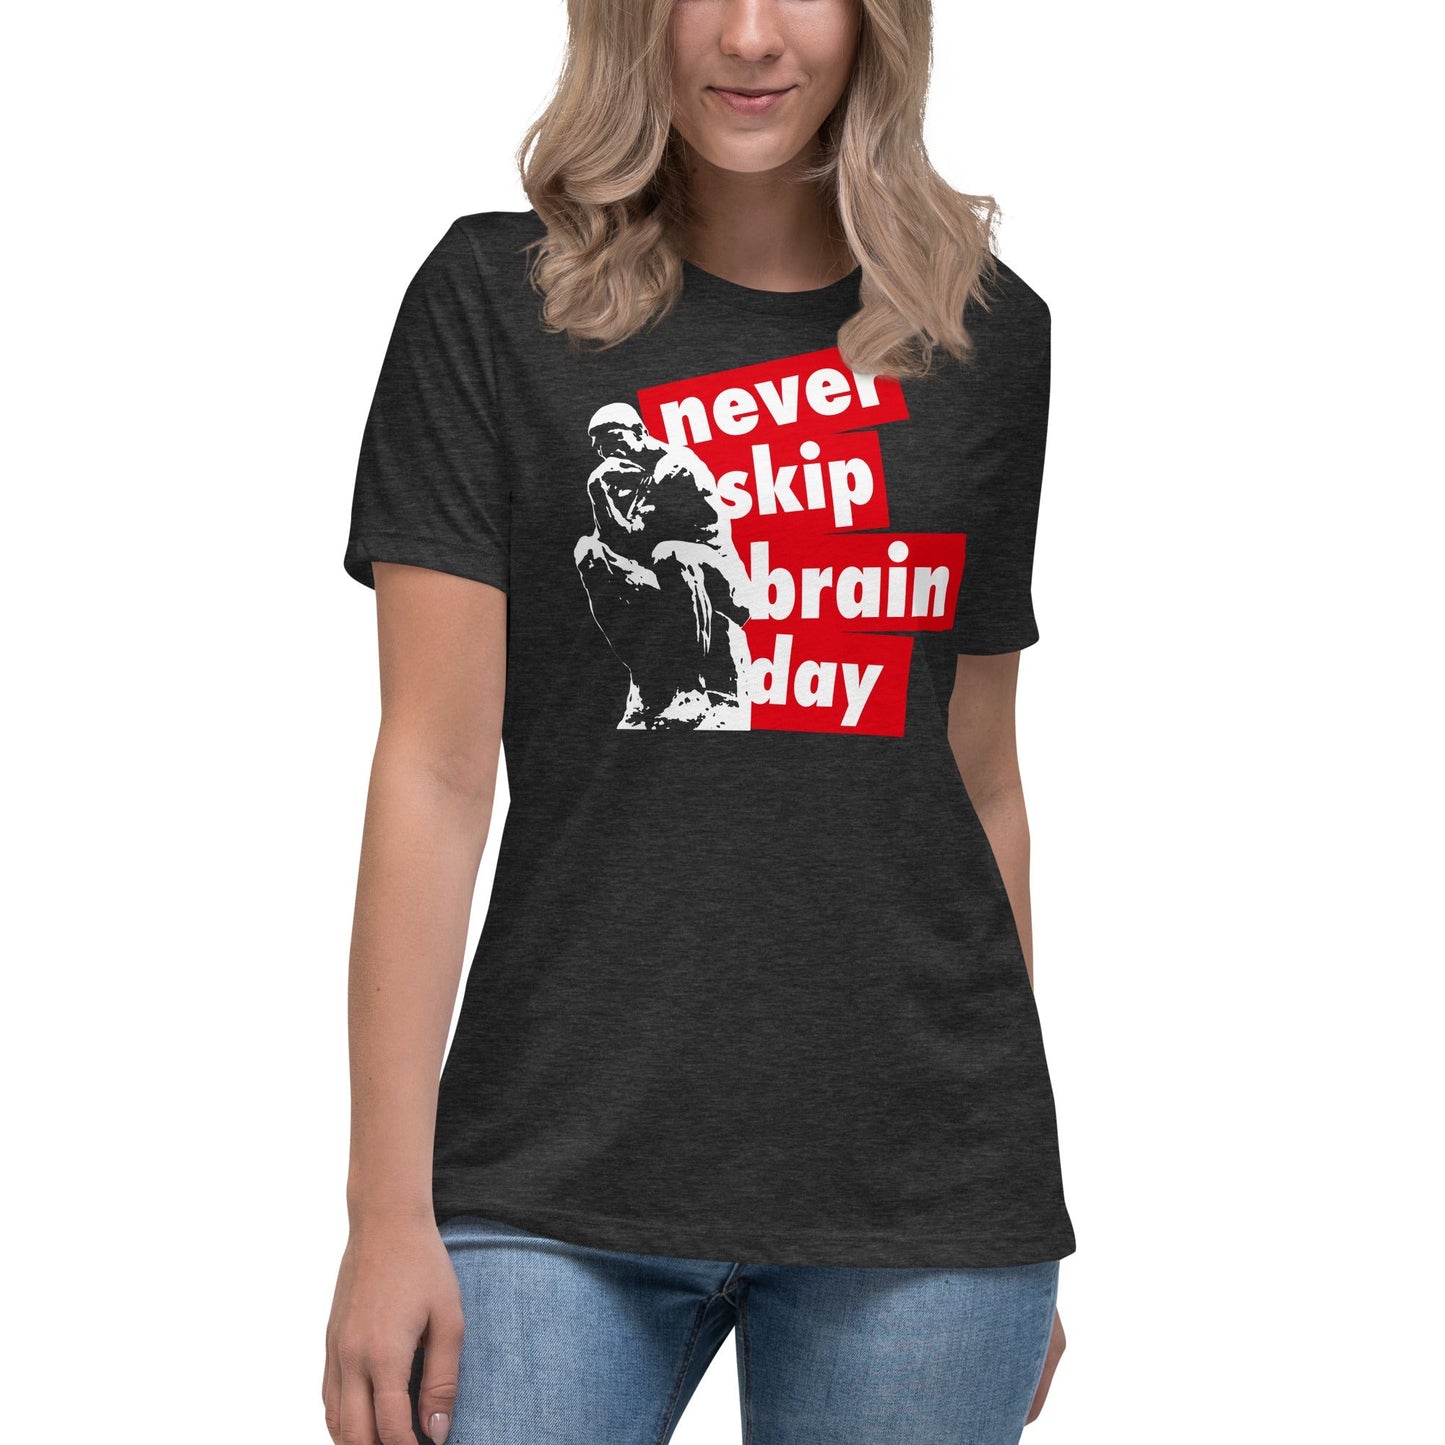 Never skip brain day - Women's T-Shirt